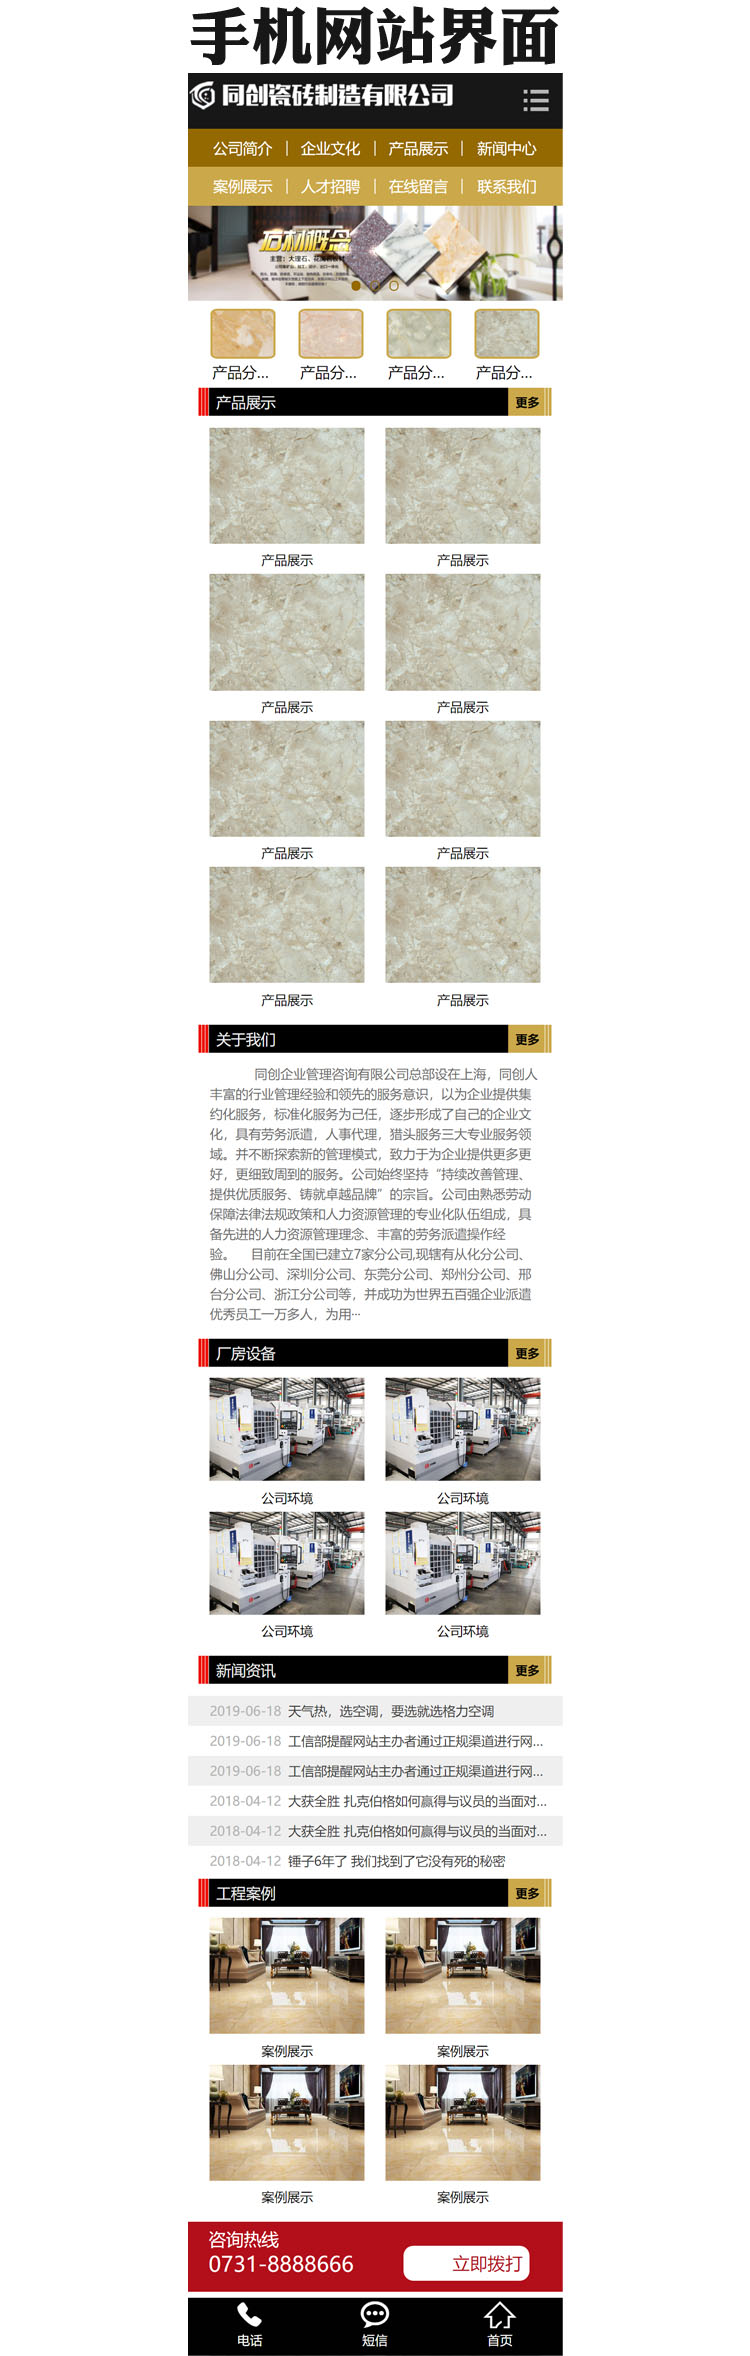 大理石瓷砖网站源码模板-XX037-3